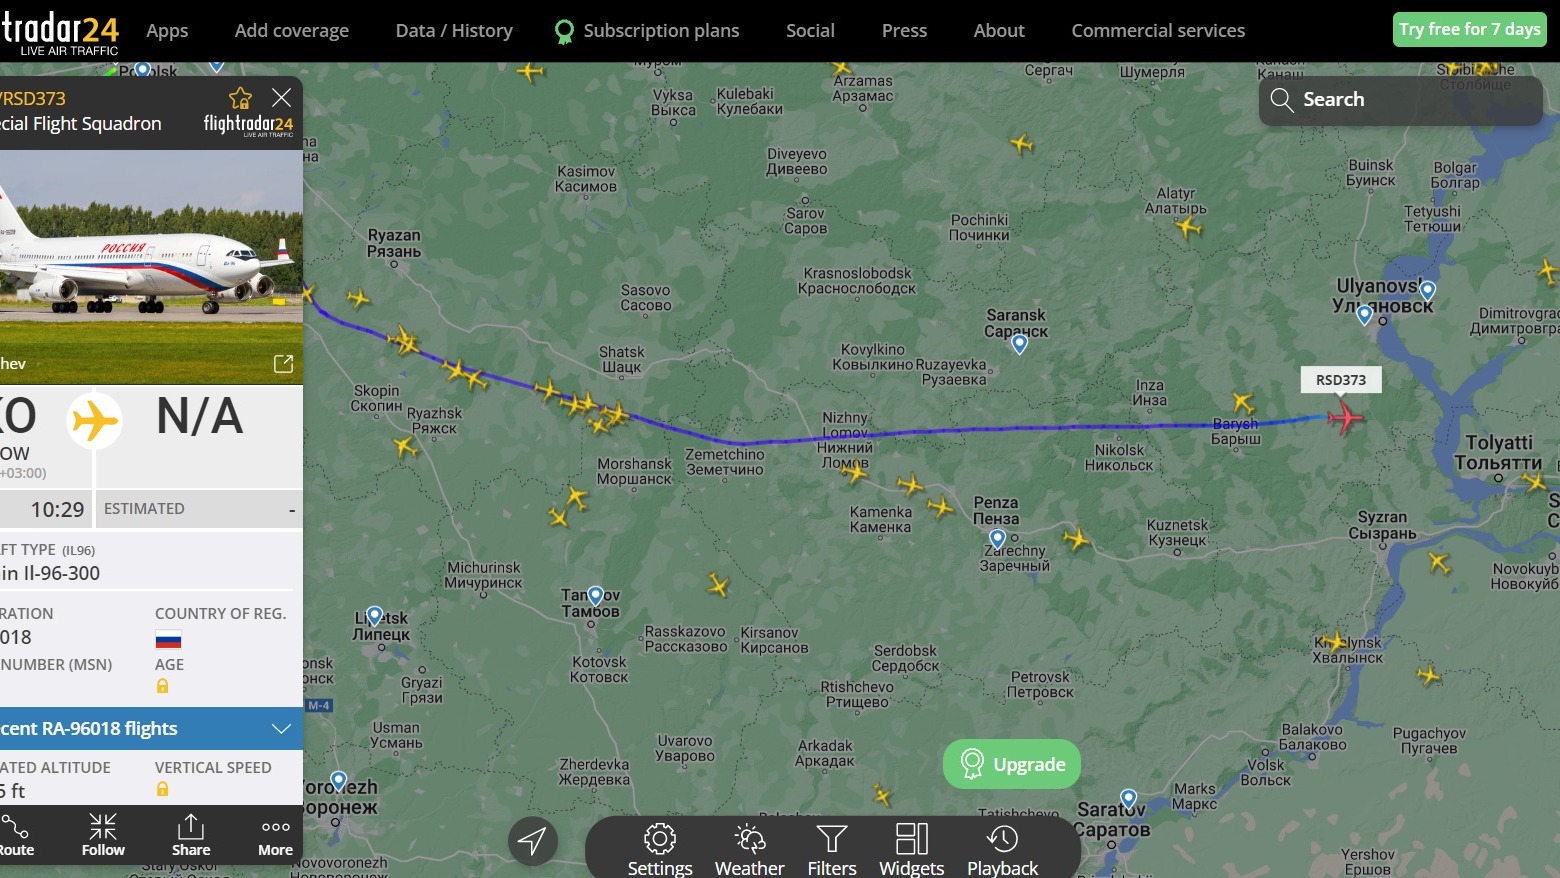 Медведев летит в Волгоград по странной траектории